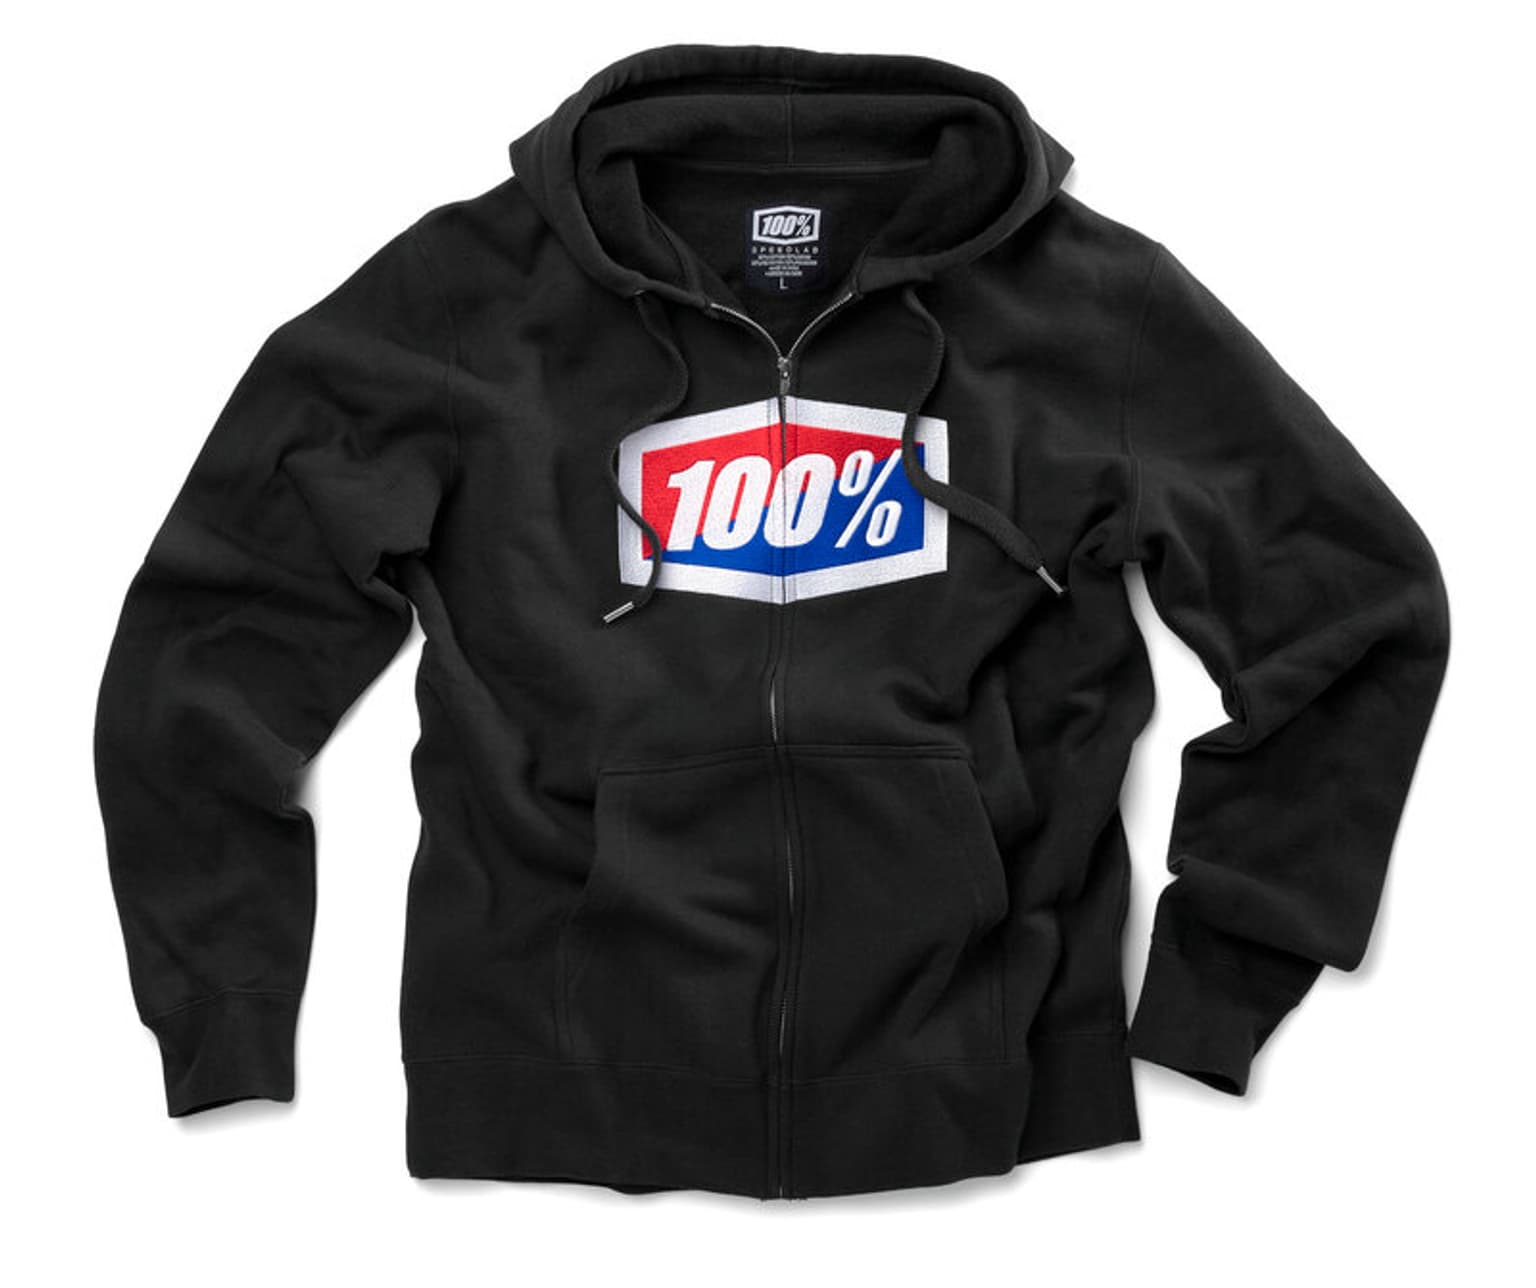 100% 100% Official Sweatshirt à capuche noir 1